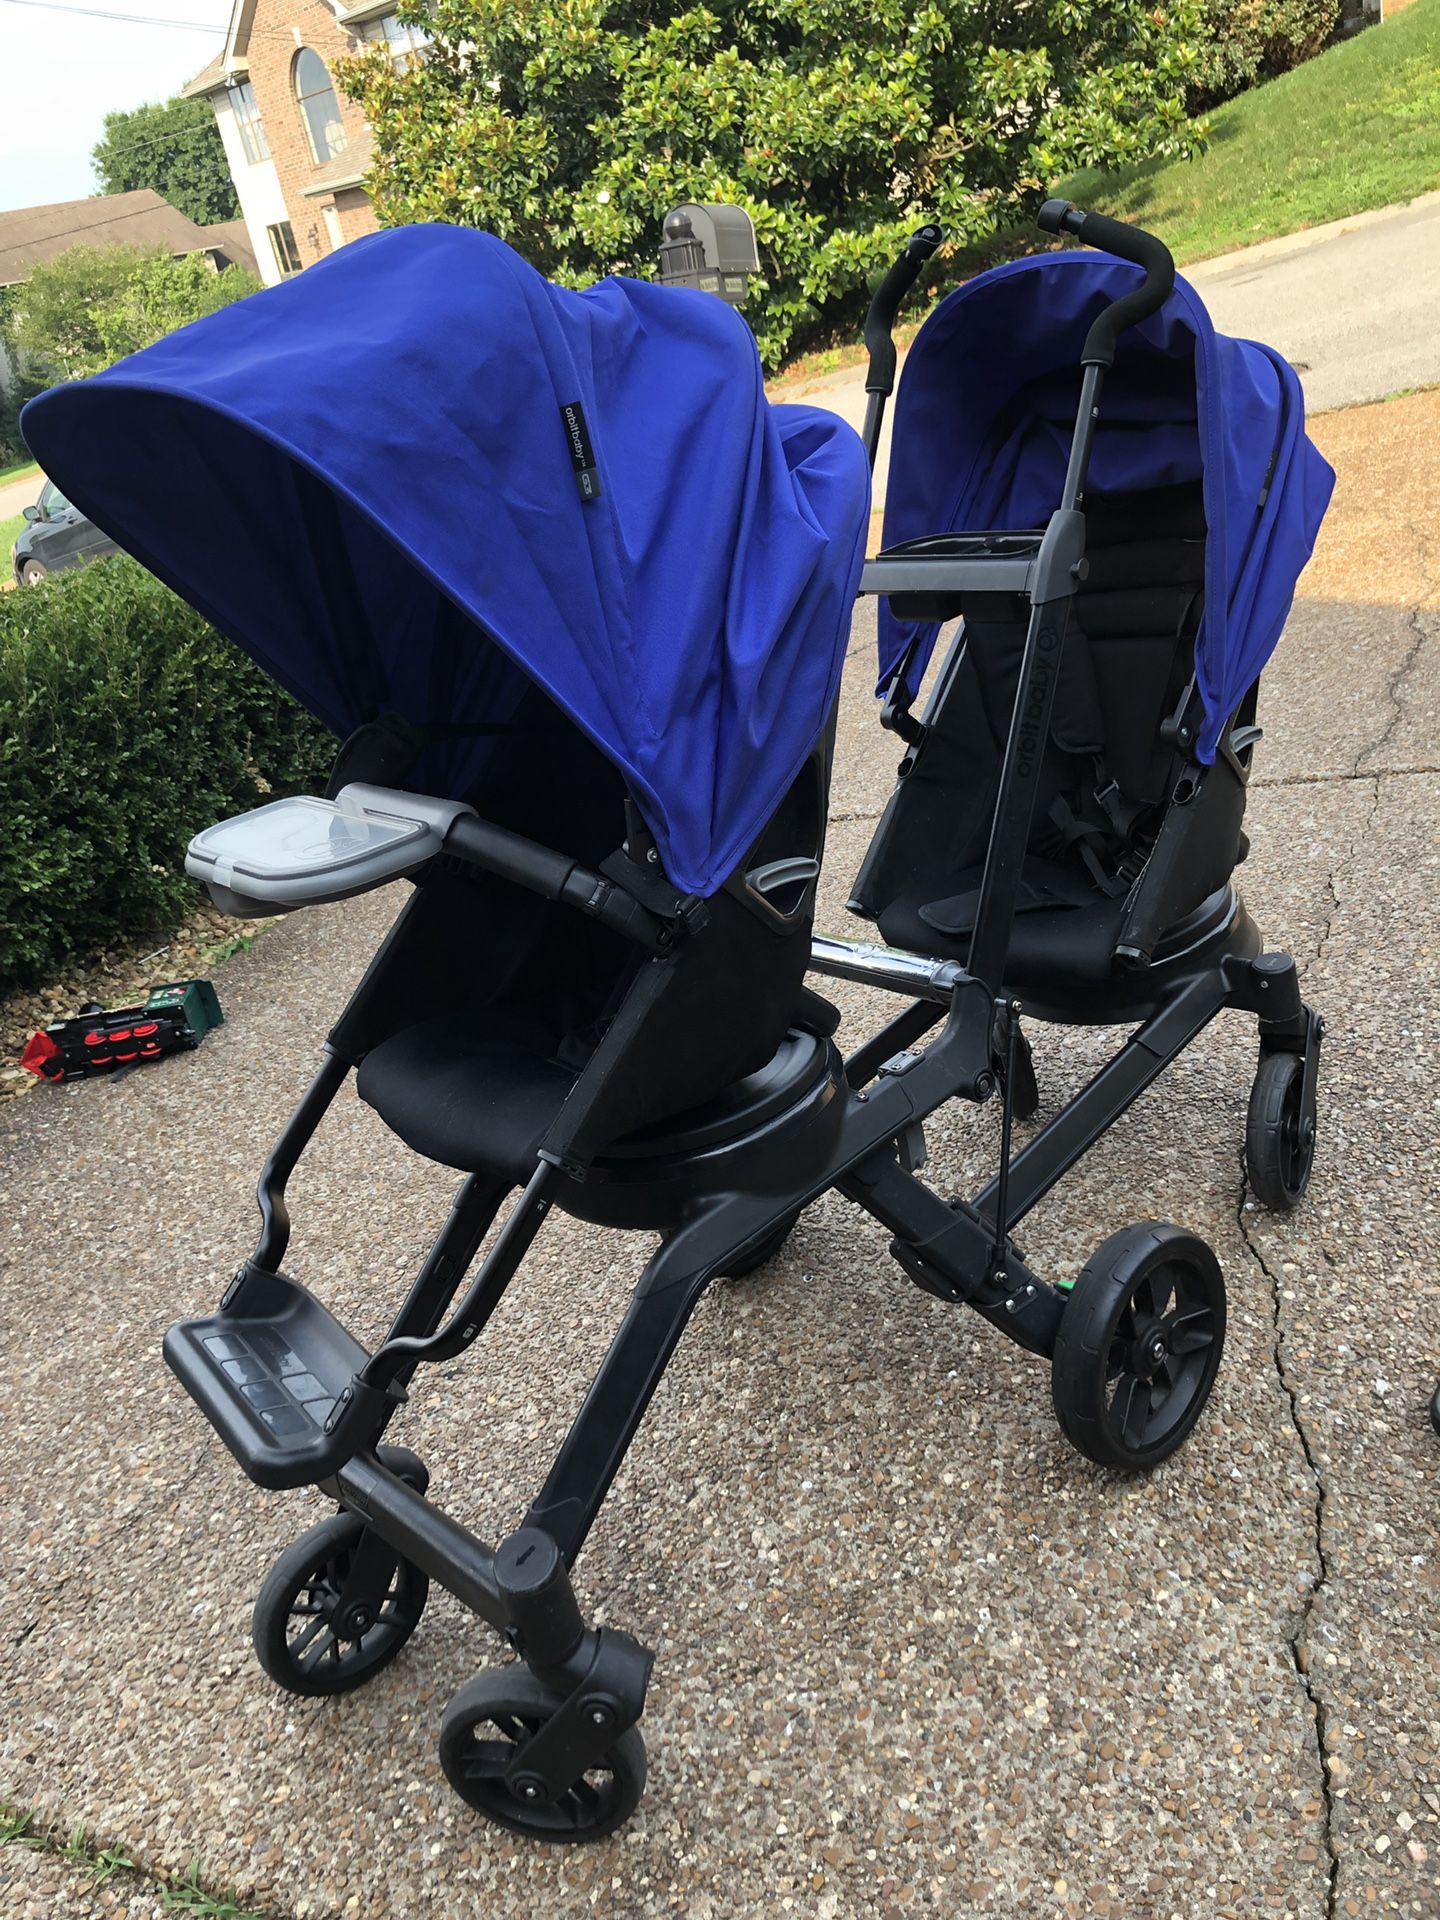 Orbit baby helix double stroller